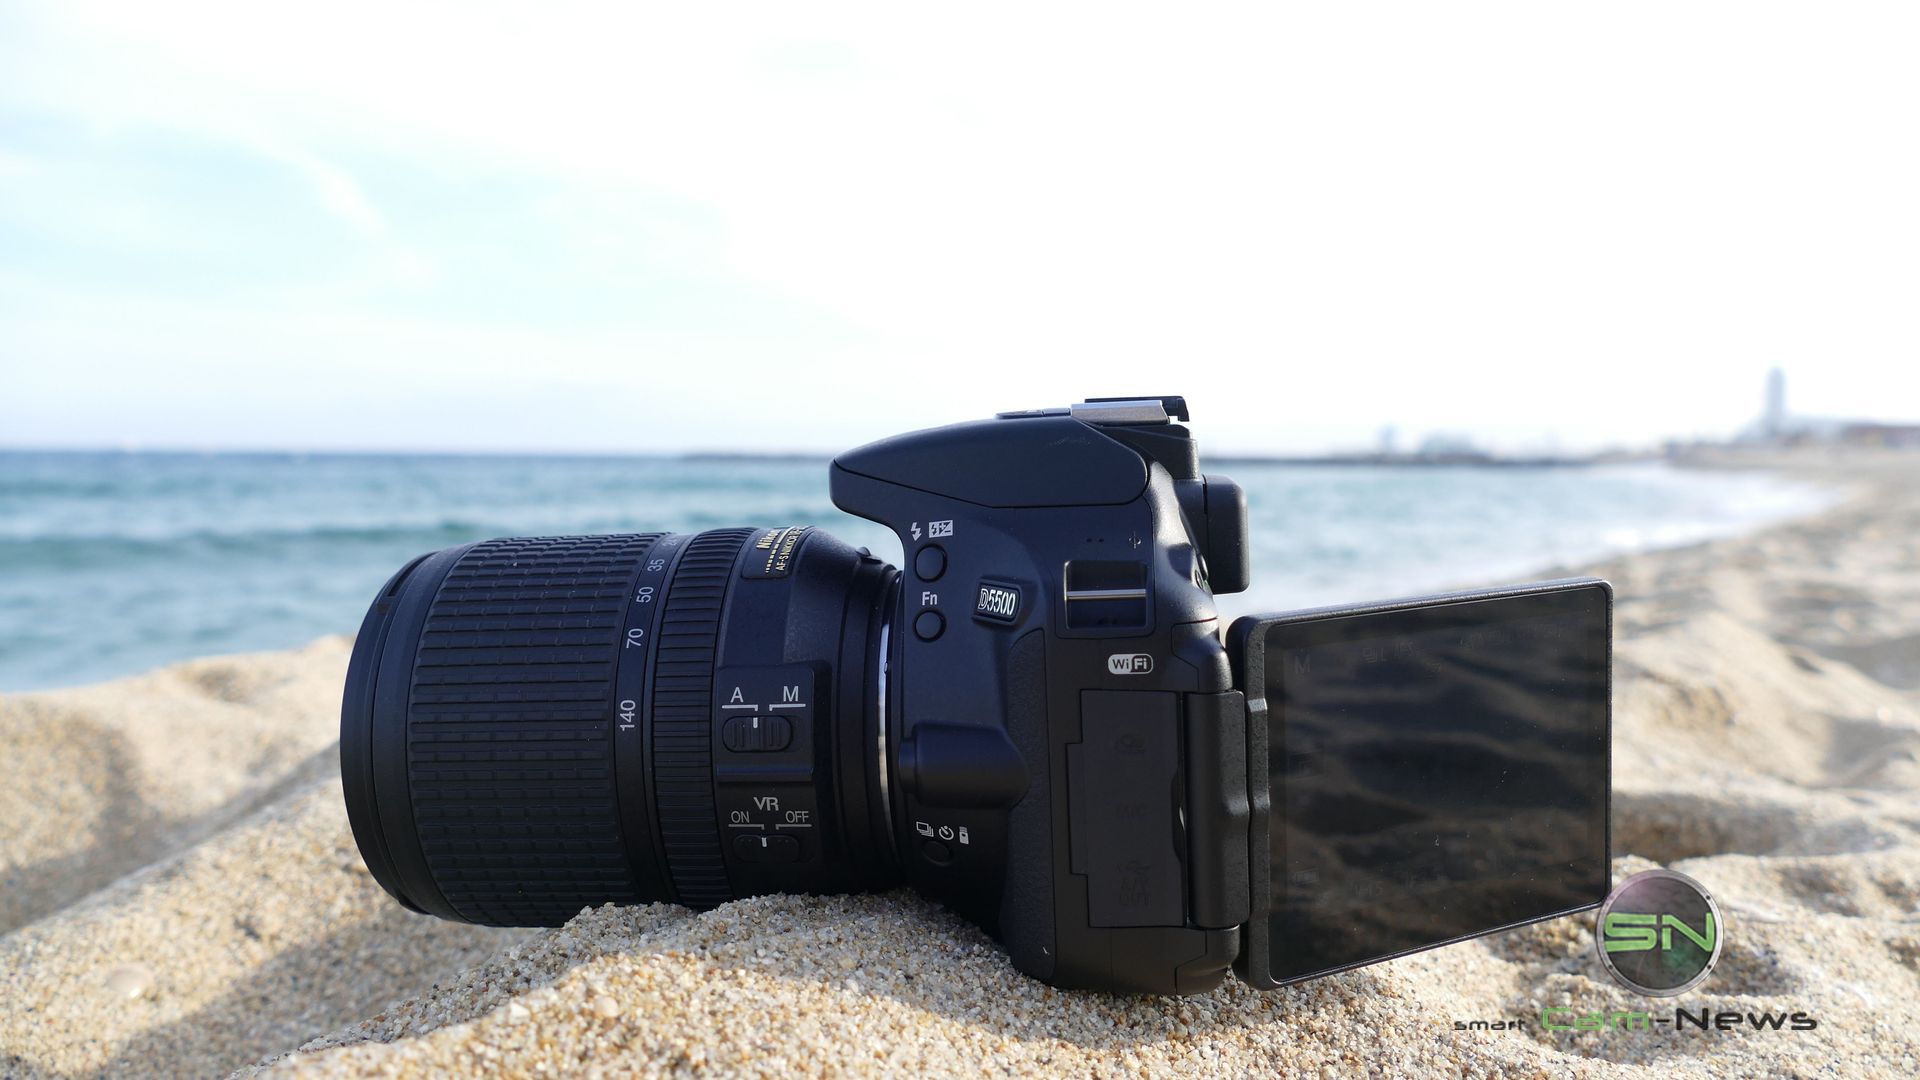 REISE nach BARCELONA: Nikon D5500 Touchscreen DSLR mit einem Hauch von Semiprofi